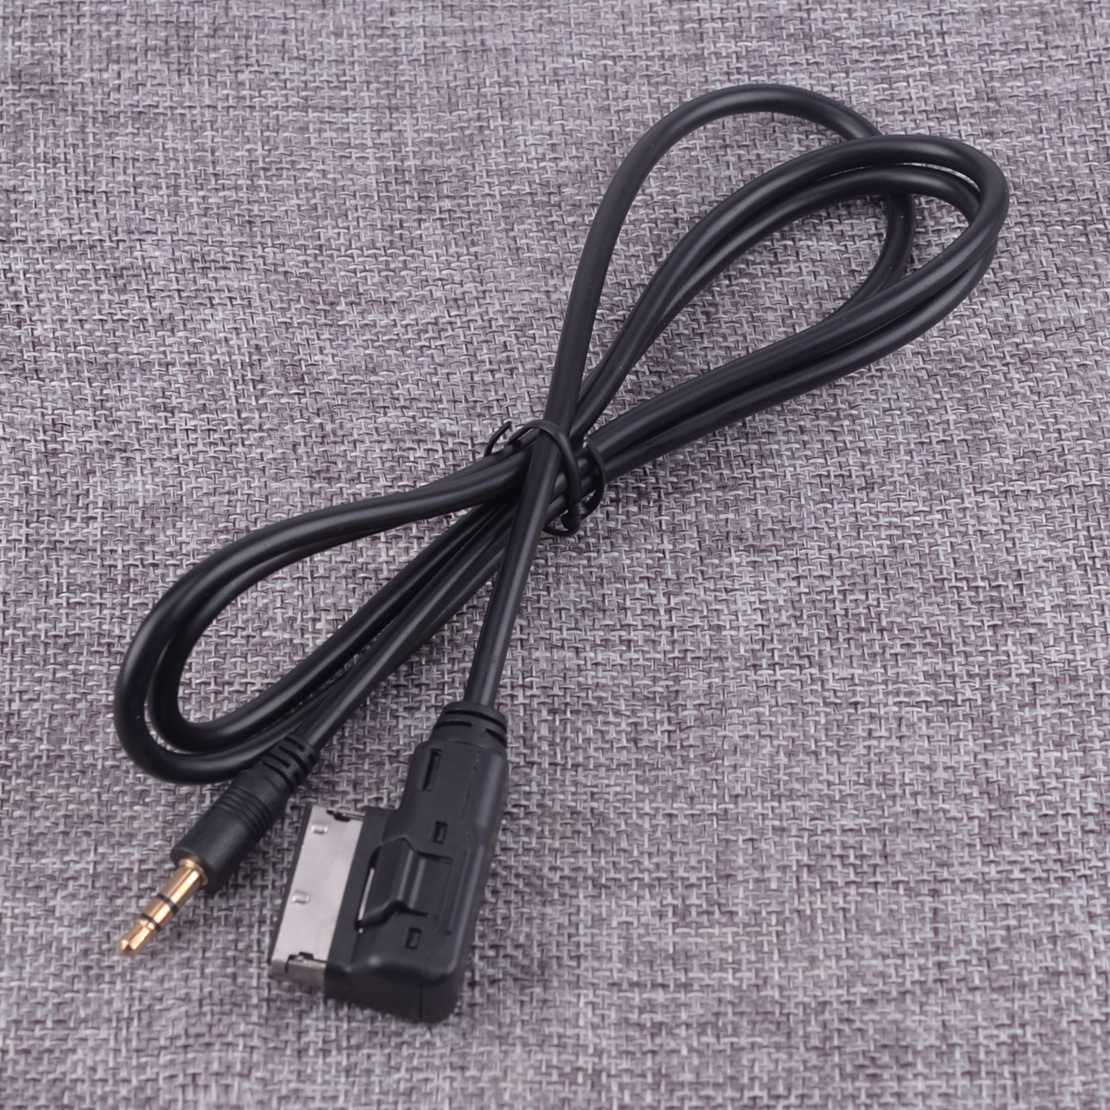 AMI MMI USB Cable Adaptador p// VW Seat Skoda Audi A3 A4 S4 A5 A6 S6 A8 S8 Q3 Q5